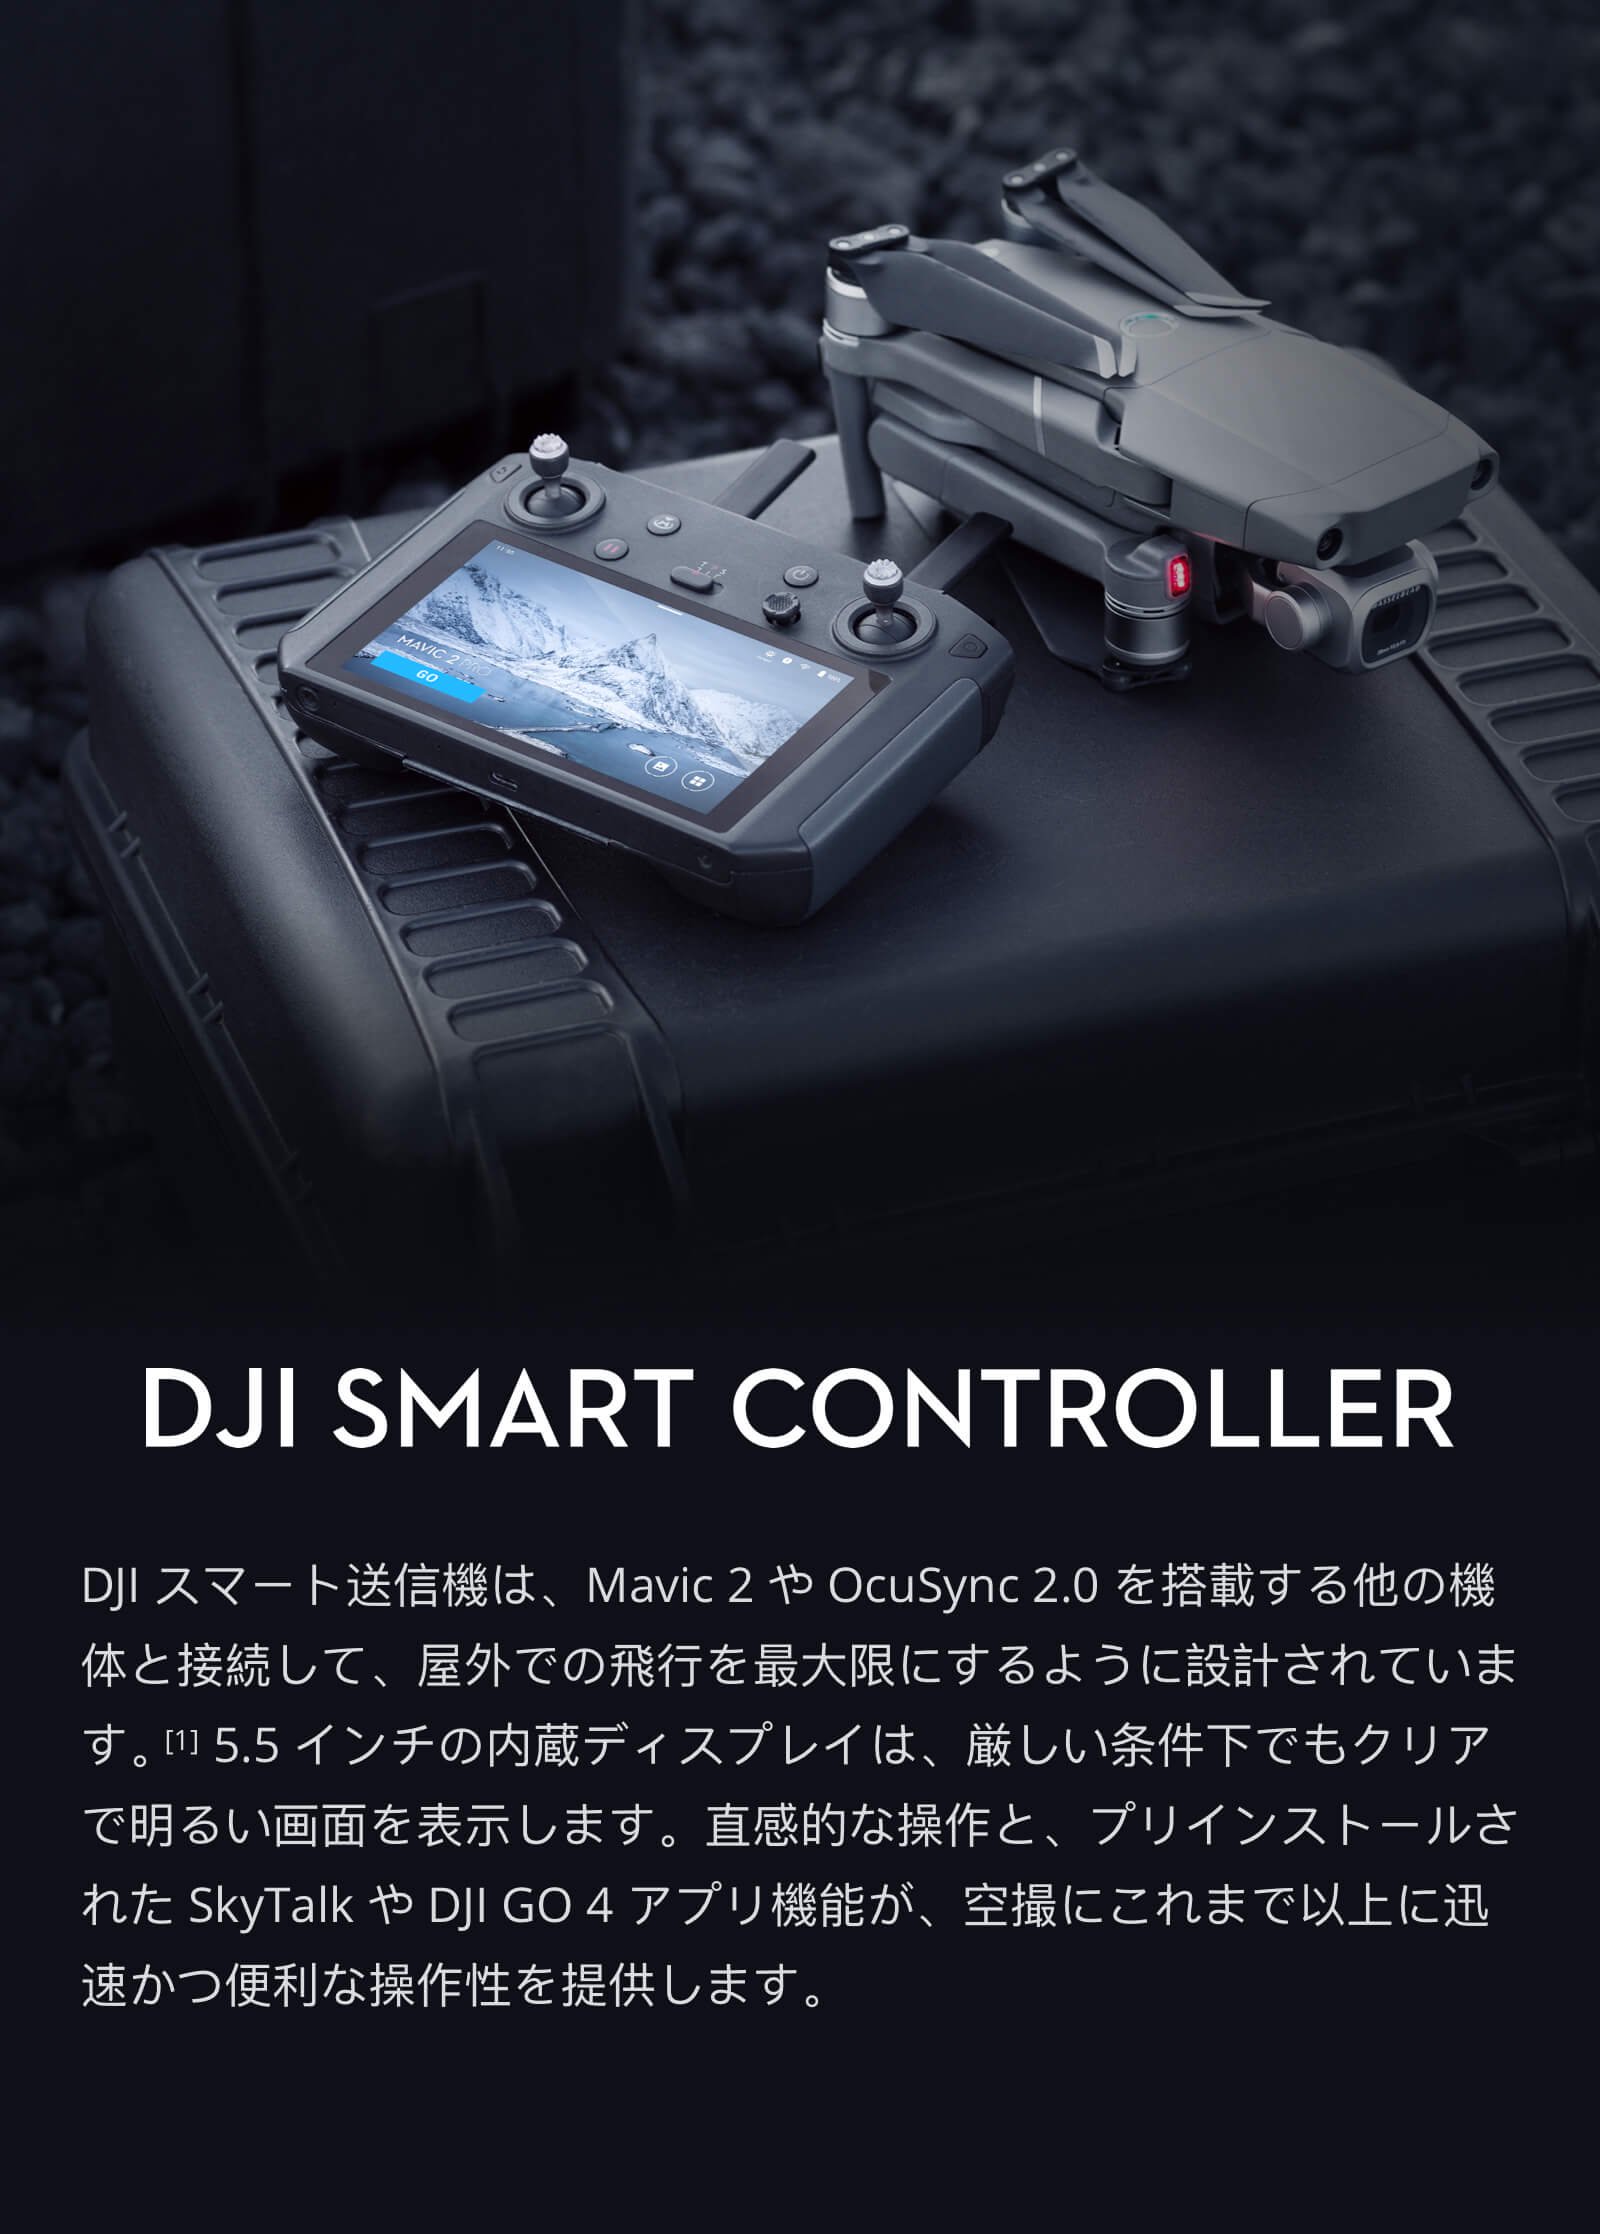 DJI スマートコントローラー - DJI製ドローン専門ショップ「飯塚モデル」